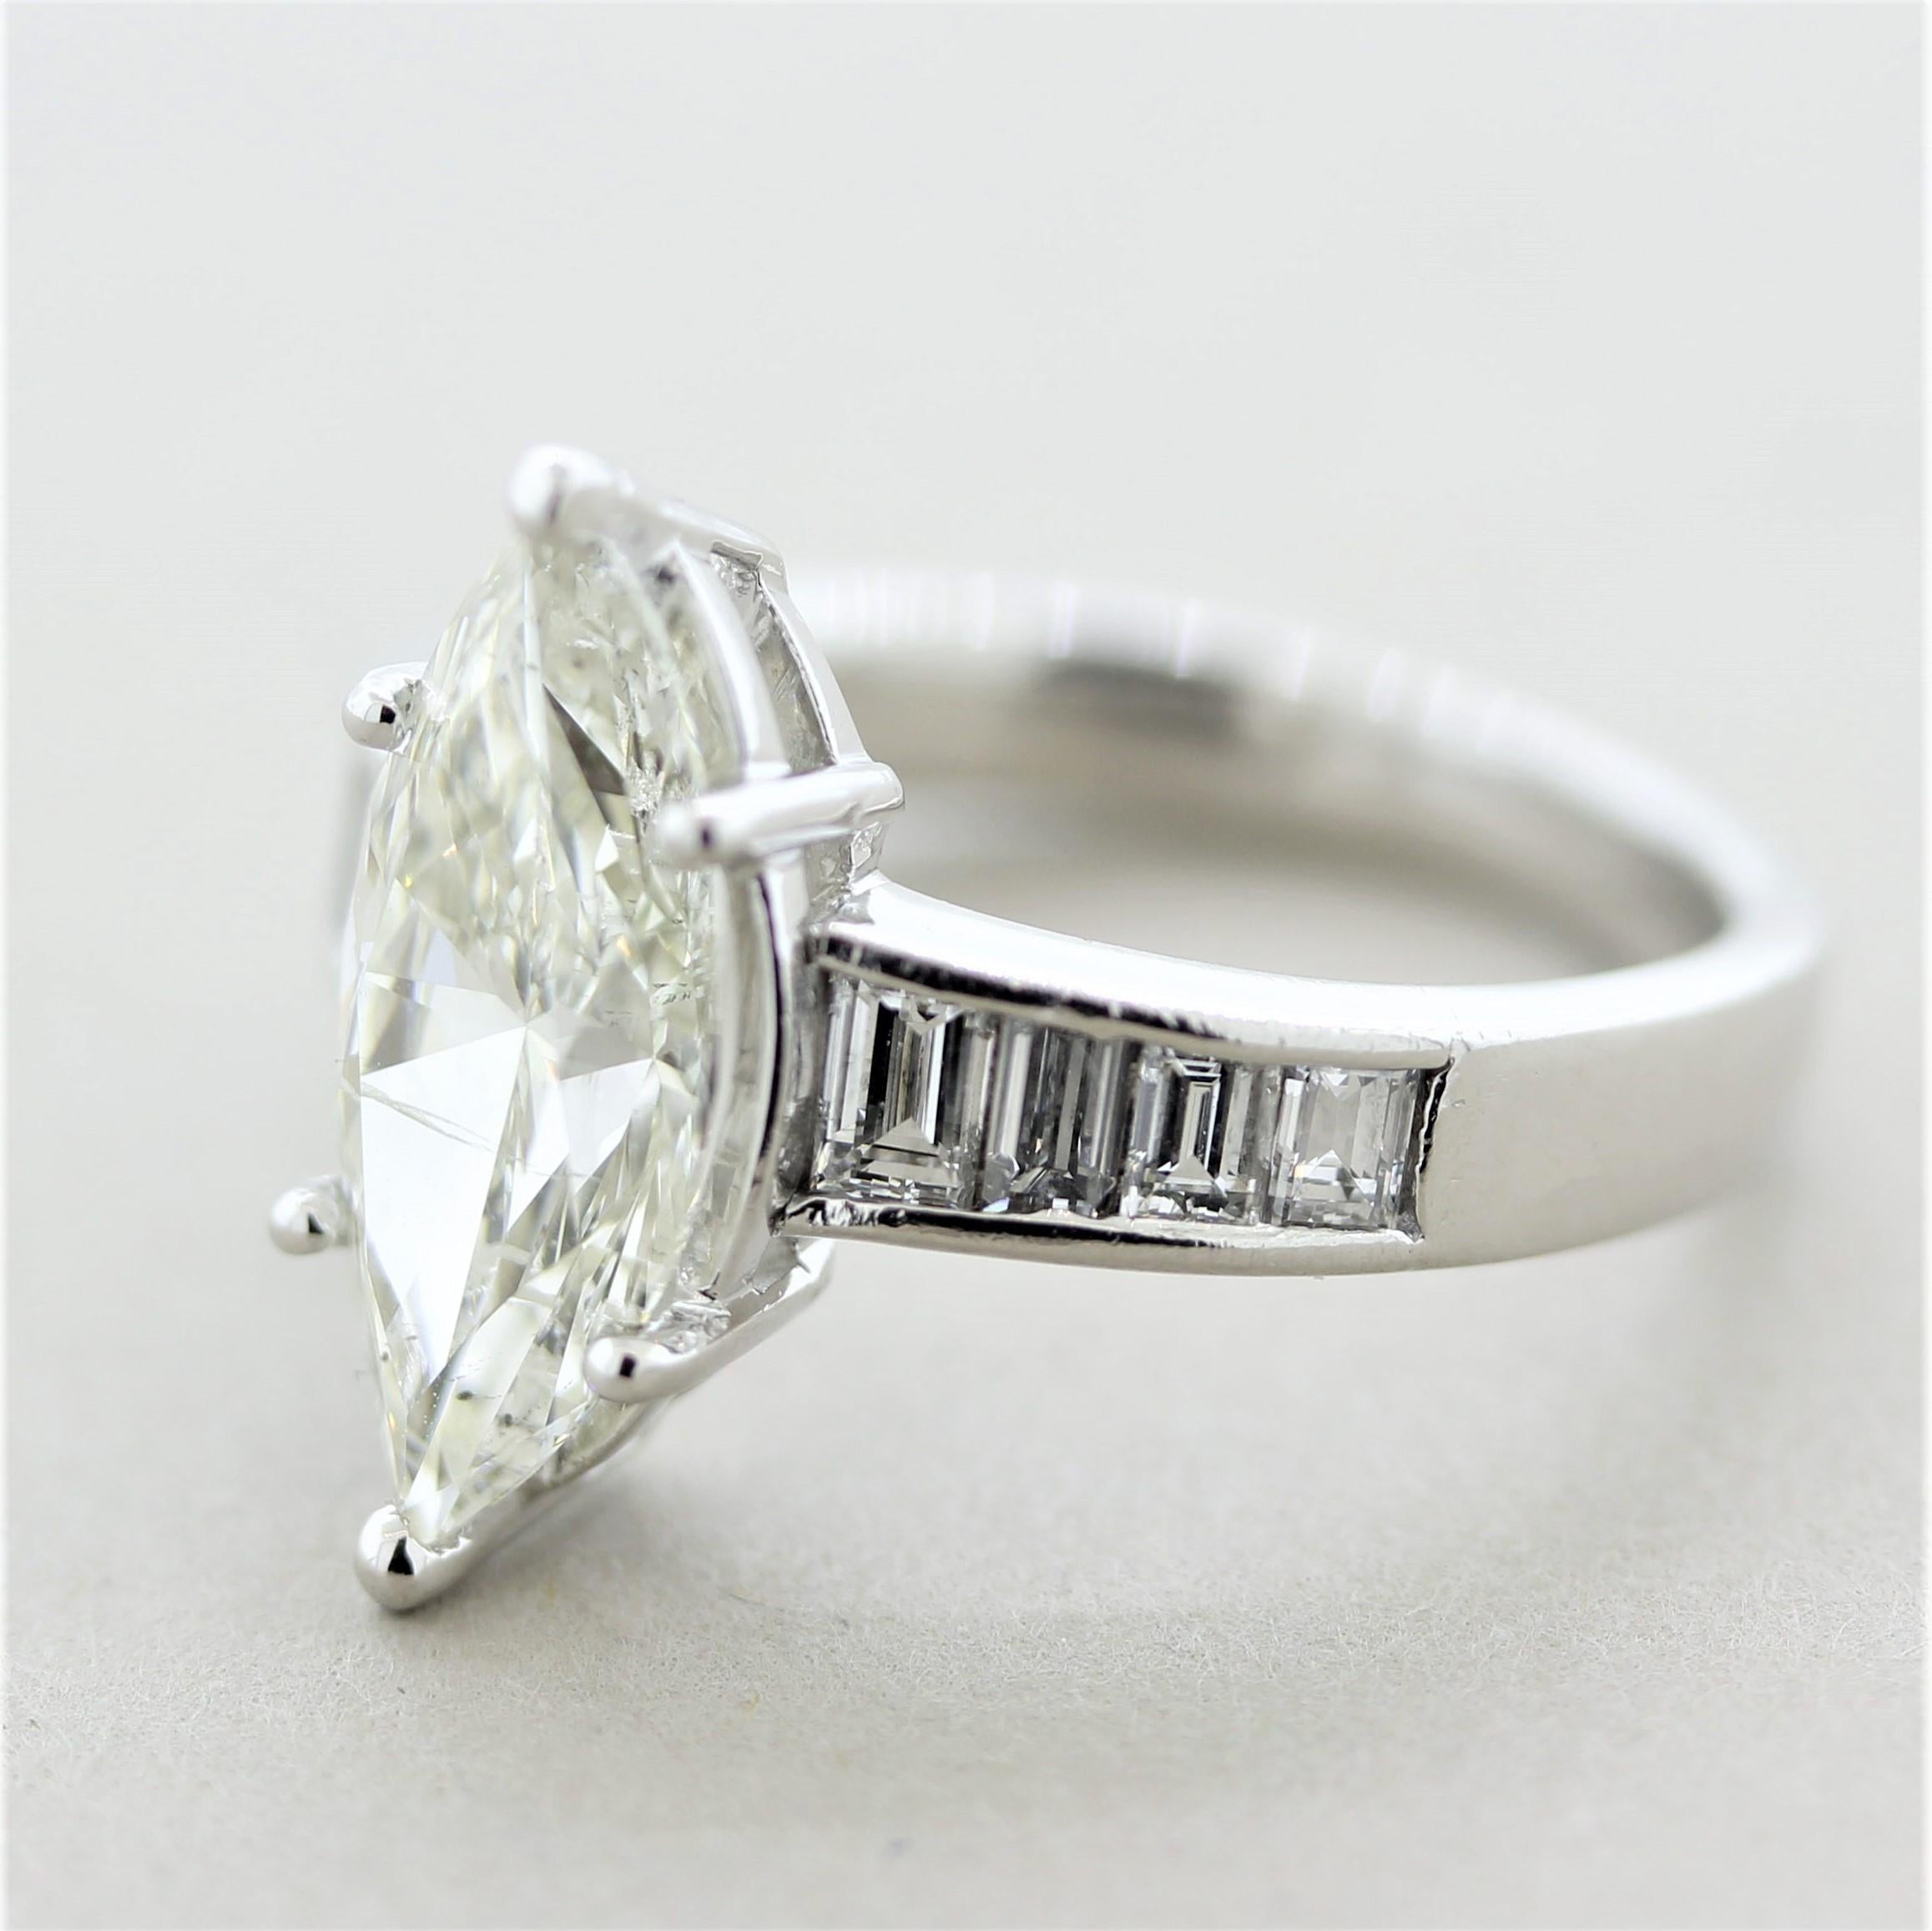 1 carat marquise diamond ring platinum